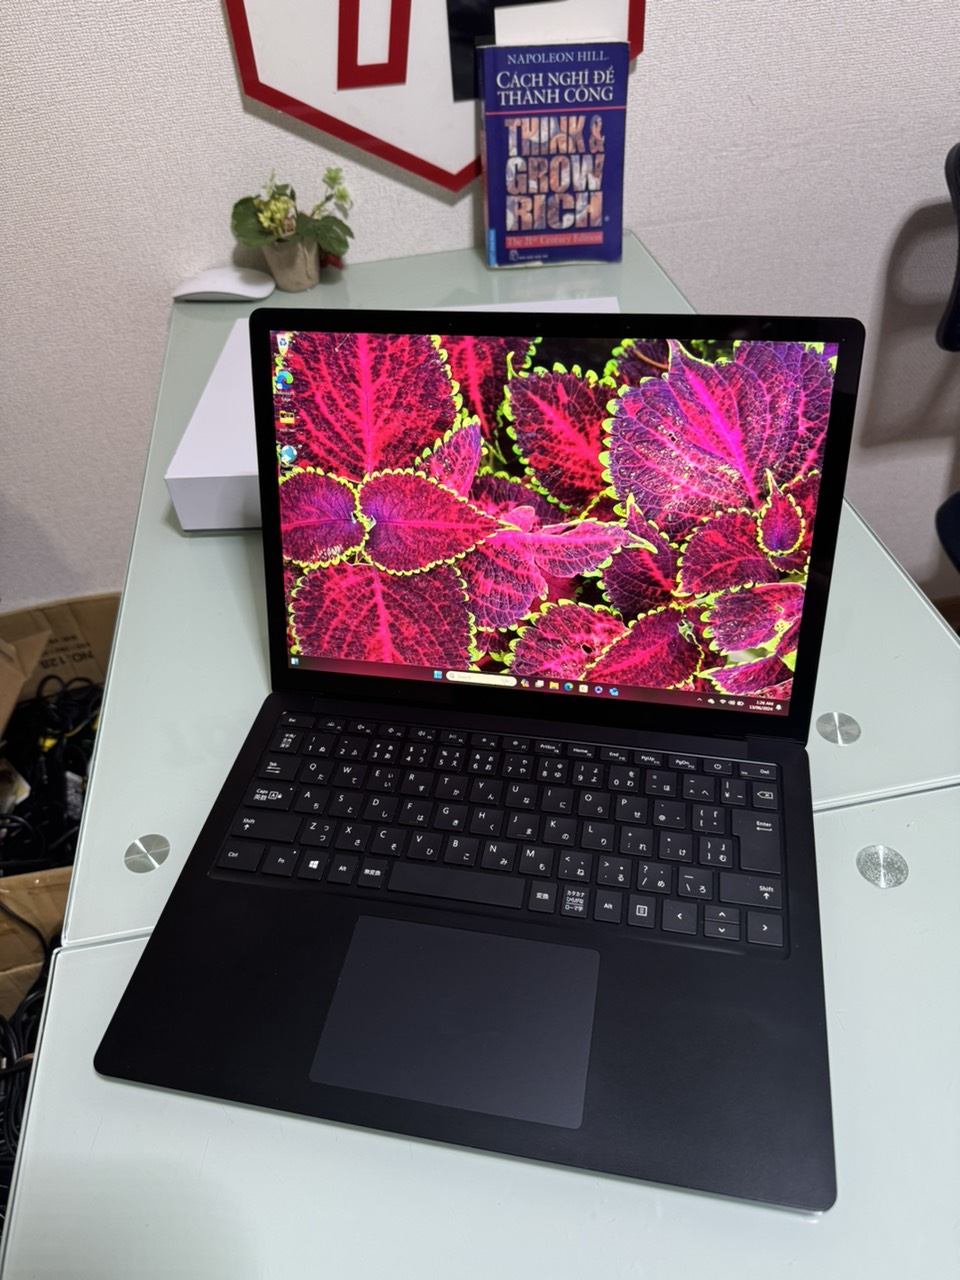 Surface Laptop 4 / Core i5-1135G7 (up to 4.20Ghz | 4 nhân 8 luồng) / RAM 8GB / SSD 512GB / 13.5 inch 2k IPS (2256x1504) cảm ứng